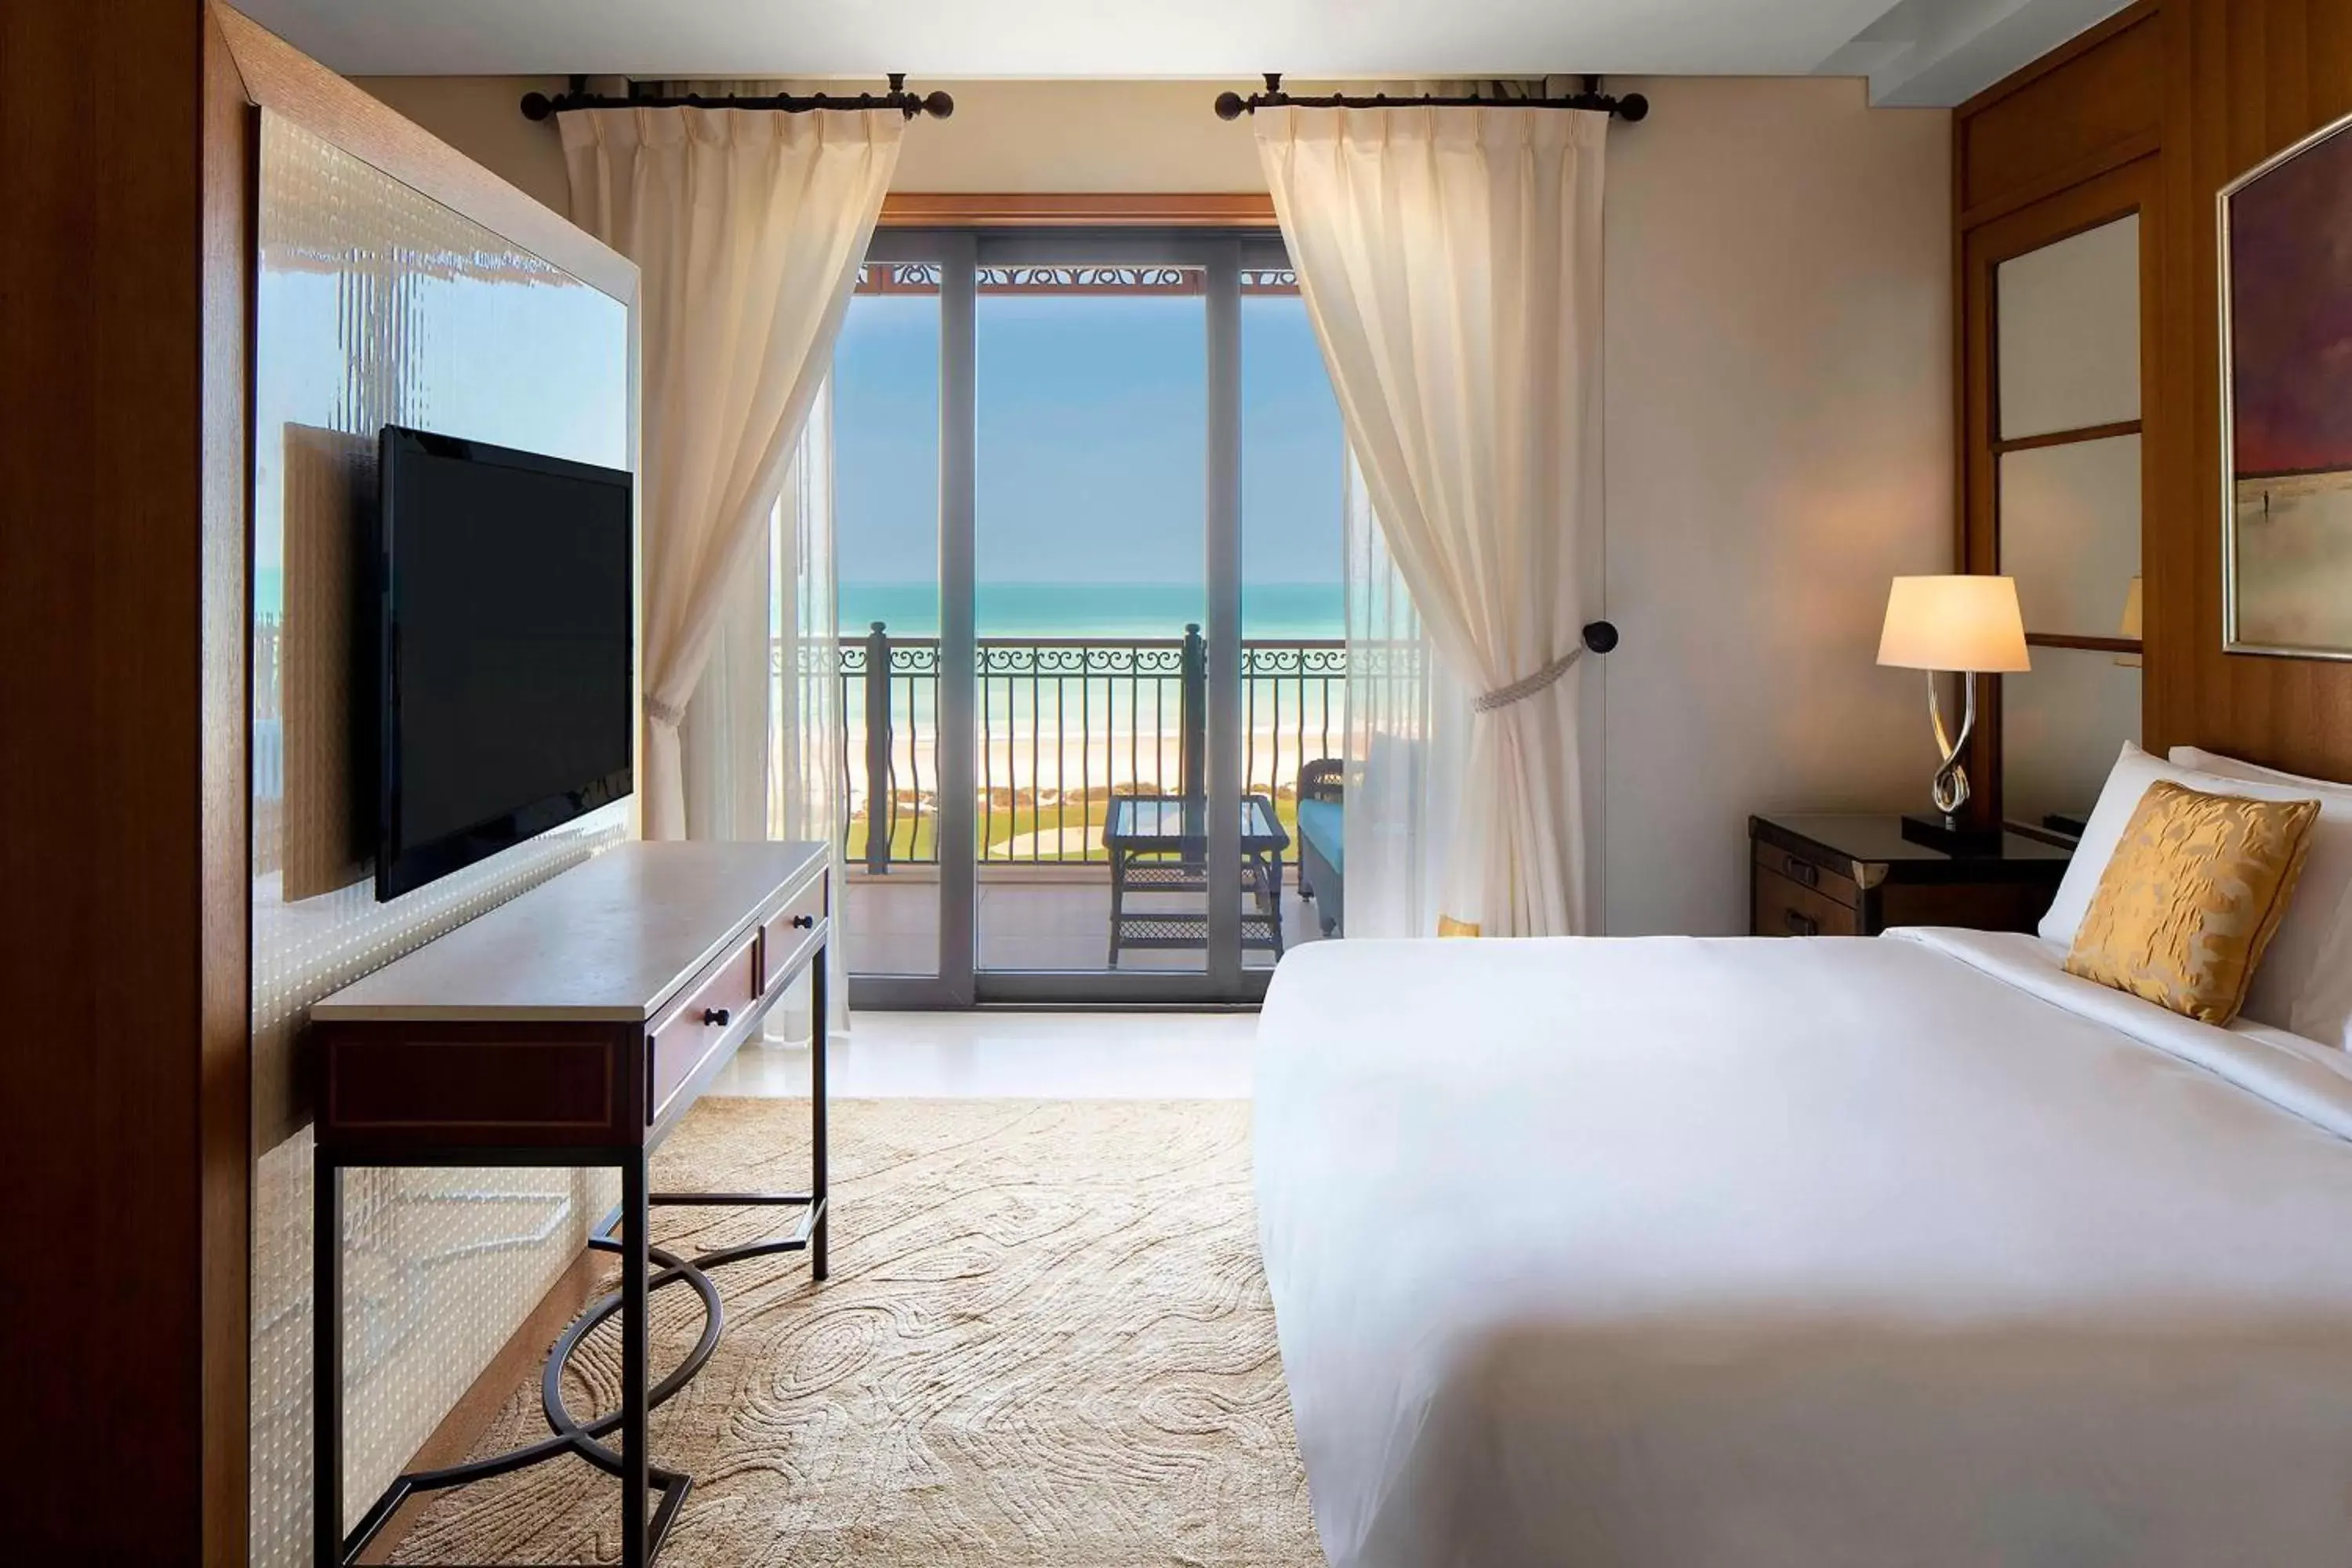 Bedroom in The St. Regis Saadiyat Island Resort, Abu Dhabi